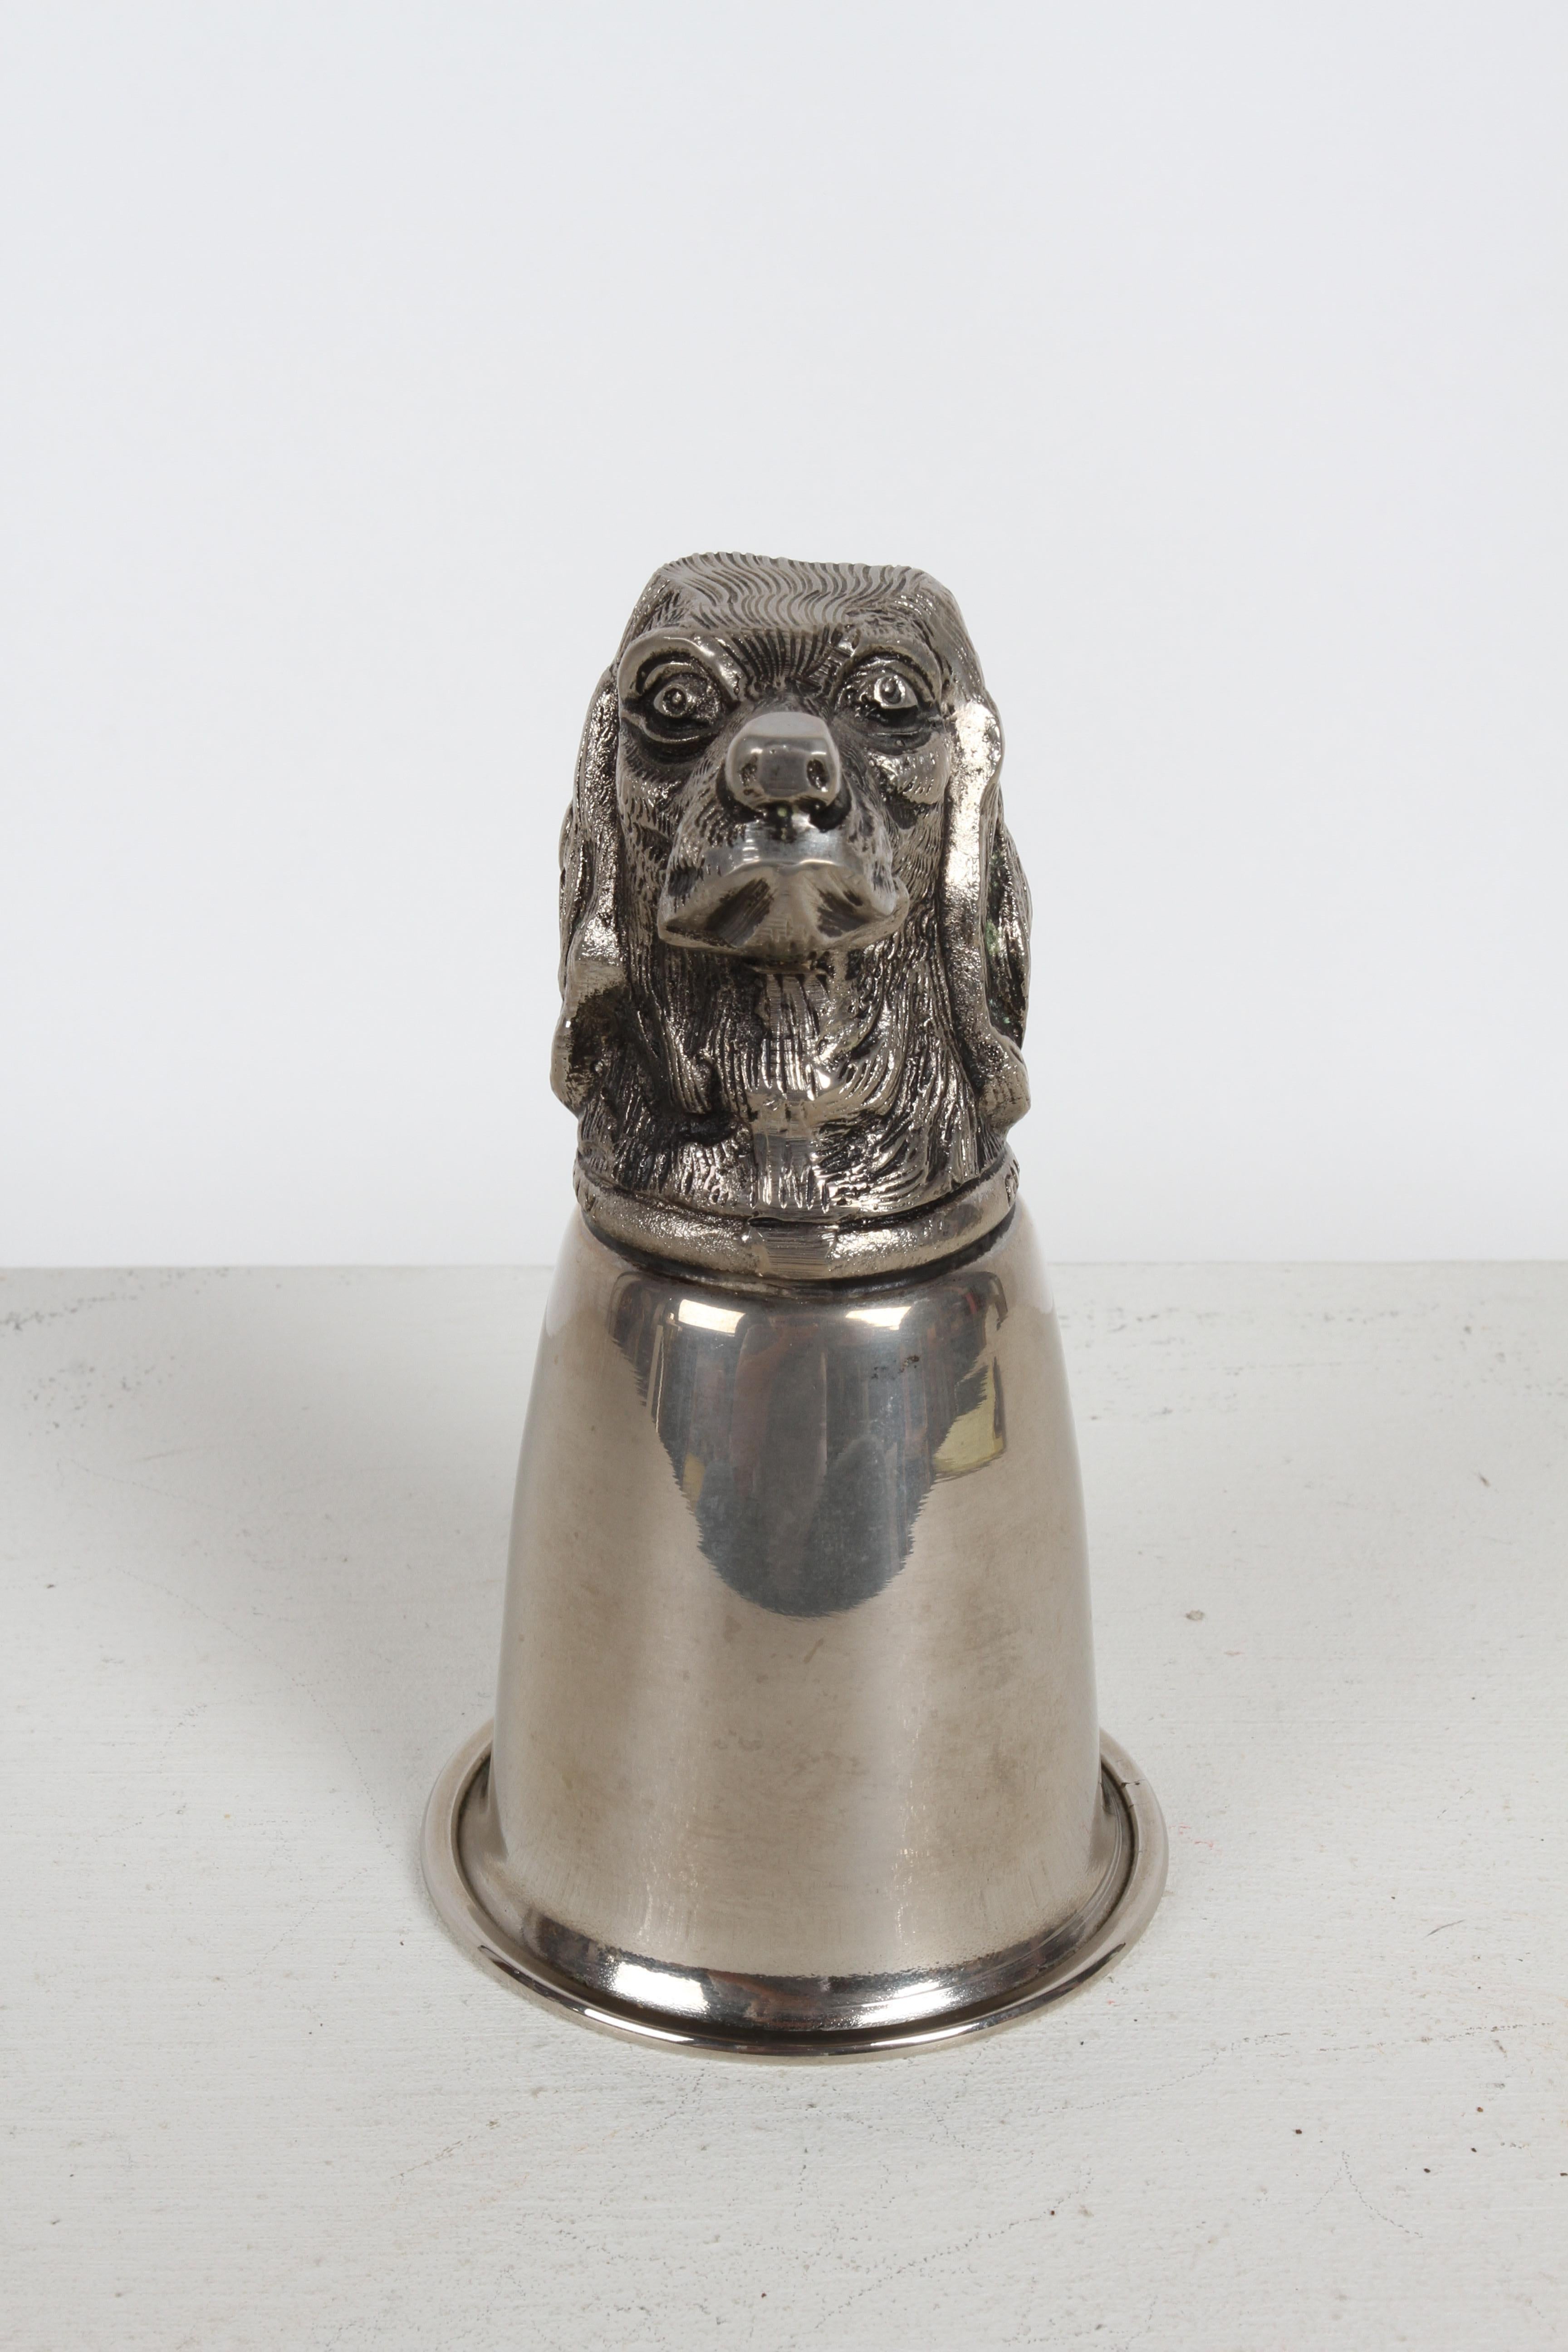 Circa 1970 Gucci - Italy Silver-Plated Dog Head (English Pointer) hunting equestrian theme stirrup cup. Cette coupe à boire / récipient peut reposer sur la tête ou être exposée retournée avec la tête bien visible, comme une sculpture ou un petit